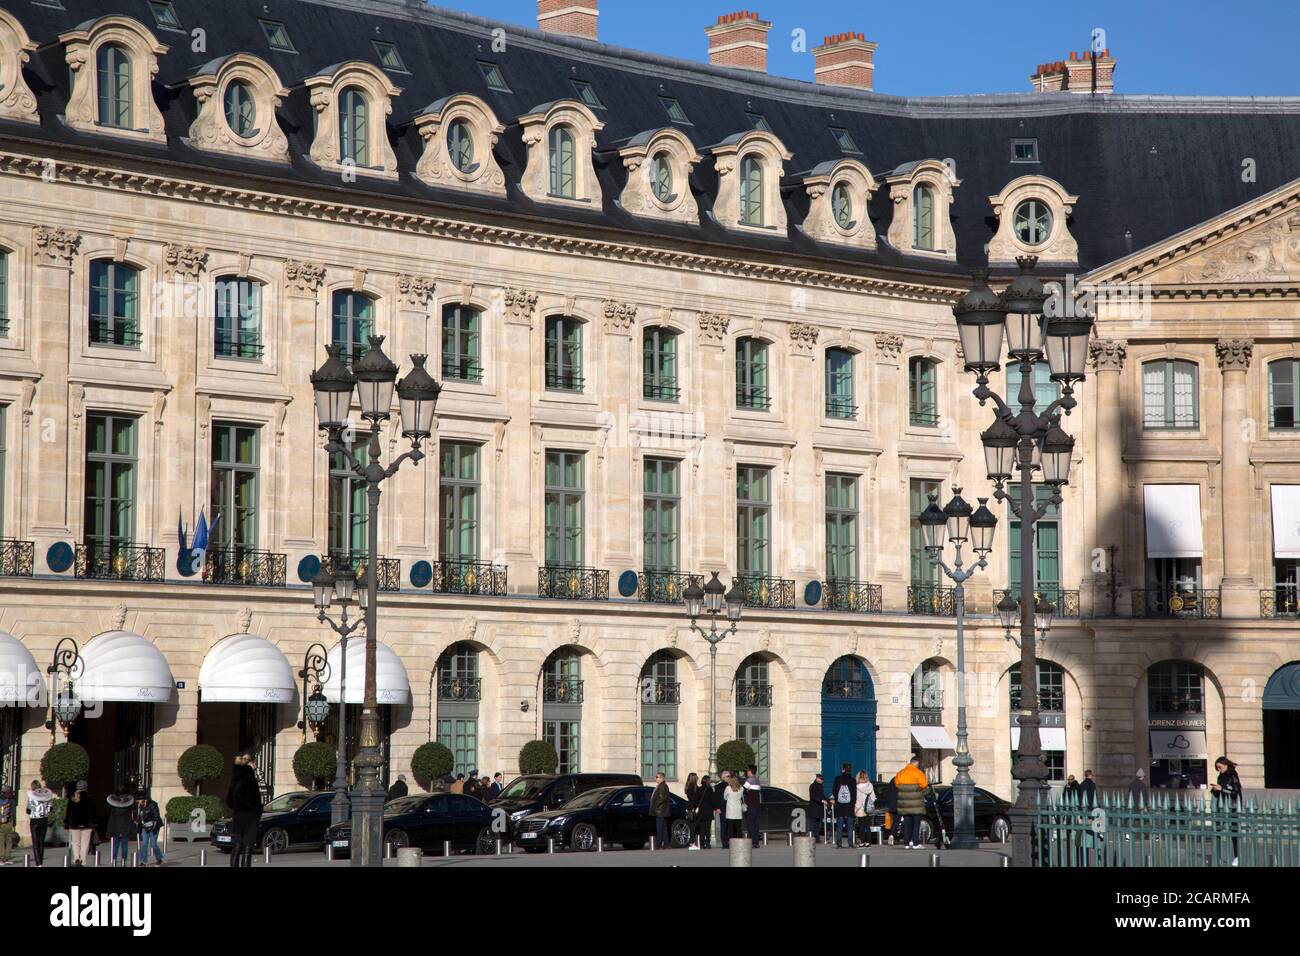 Hotel Ritz - Place Vendome - Paris - France 